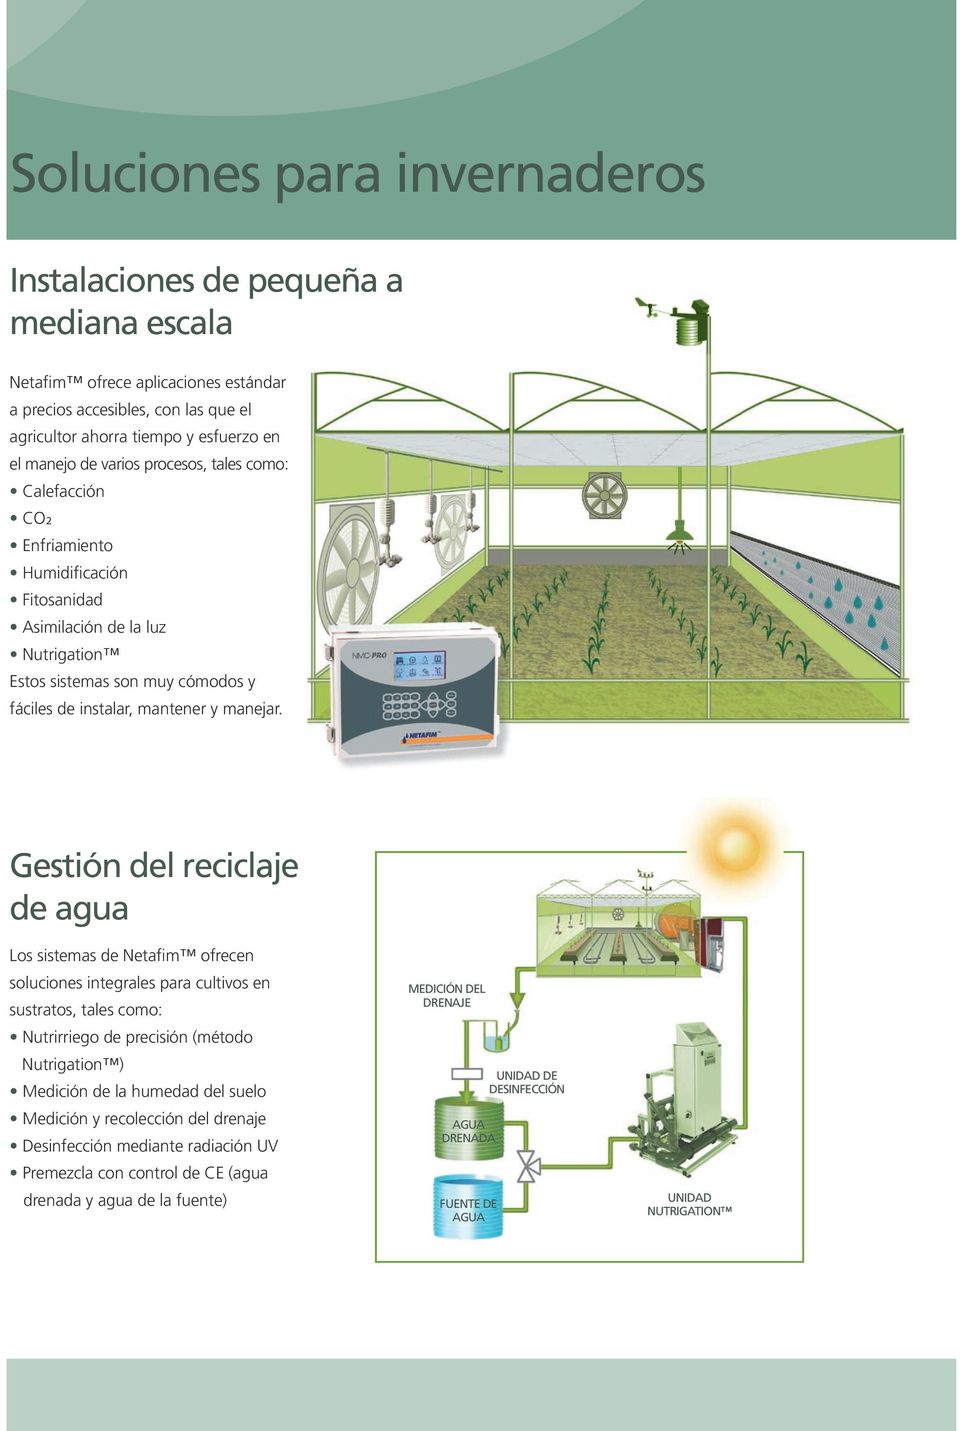 Gestión del reciclaje de agua Los sistemas de Netafim ofrecen soluciones integrales para cultivos en sustratos, tales como: Nutrirriego de precisión (método Nutrigation ) Medición de la humedad del